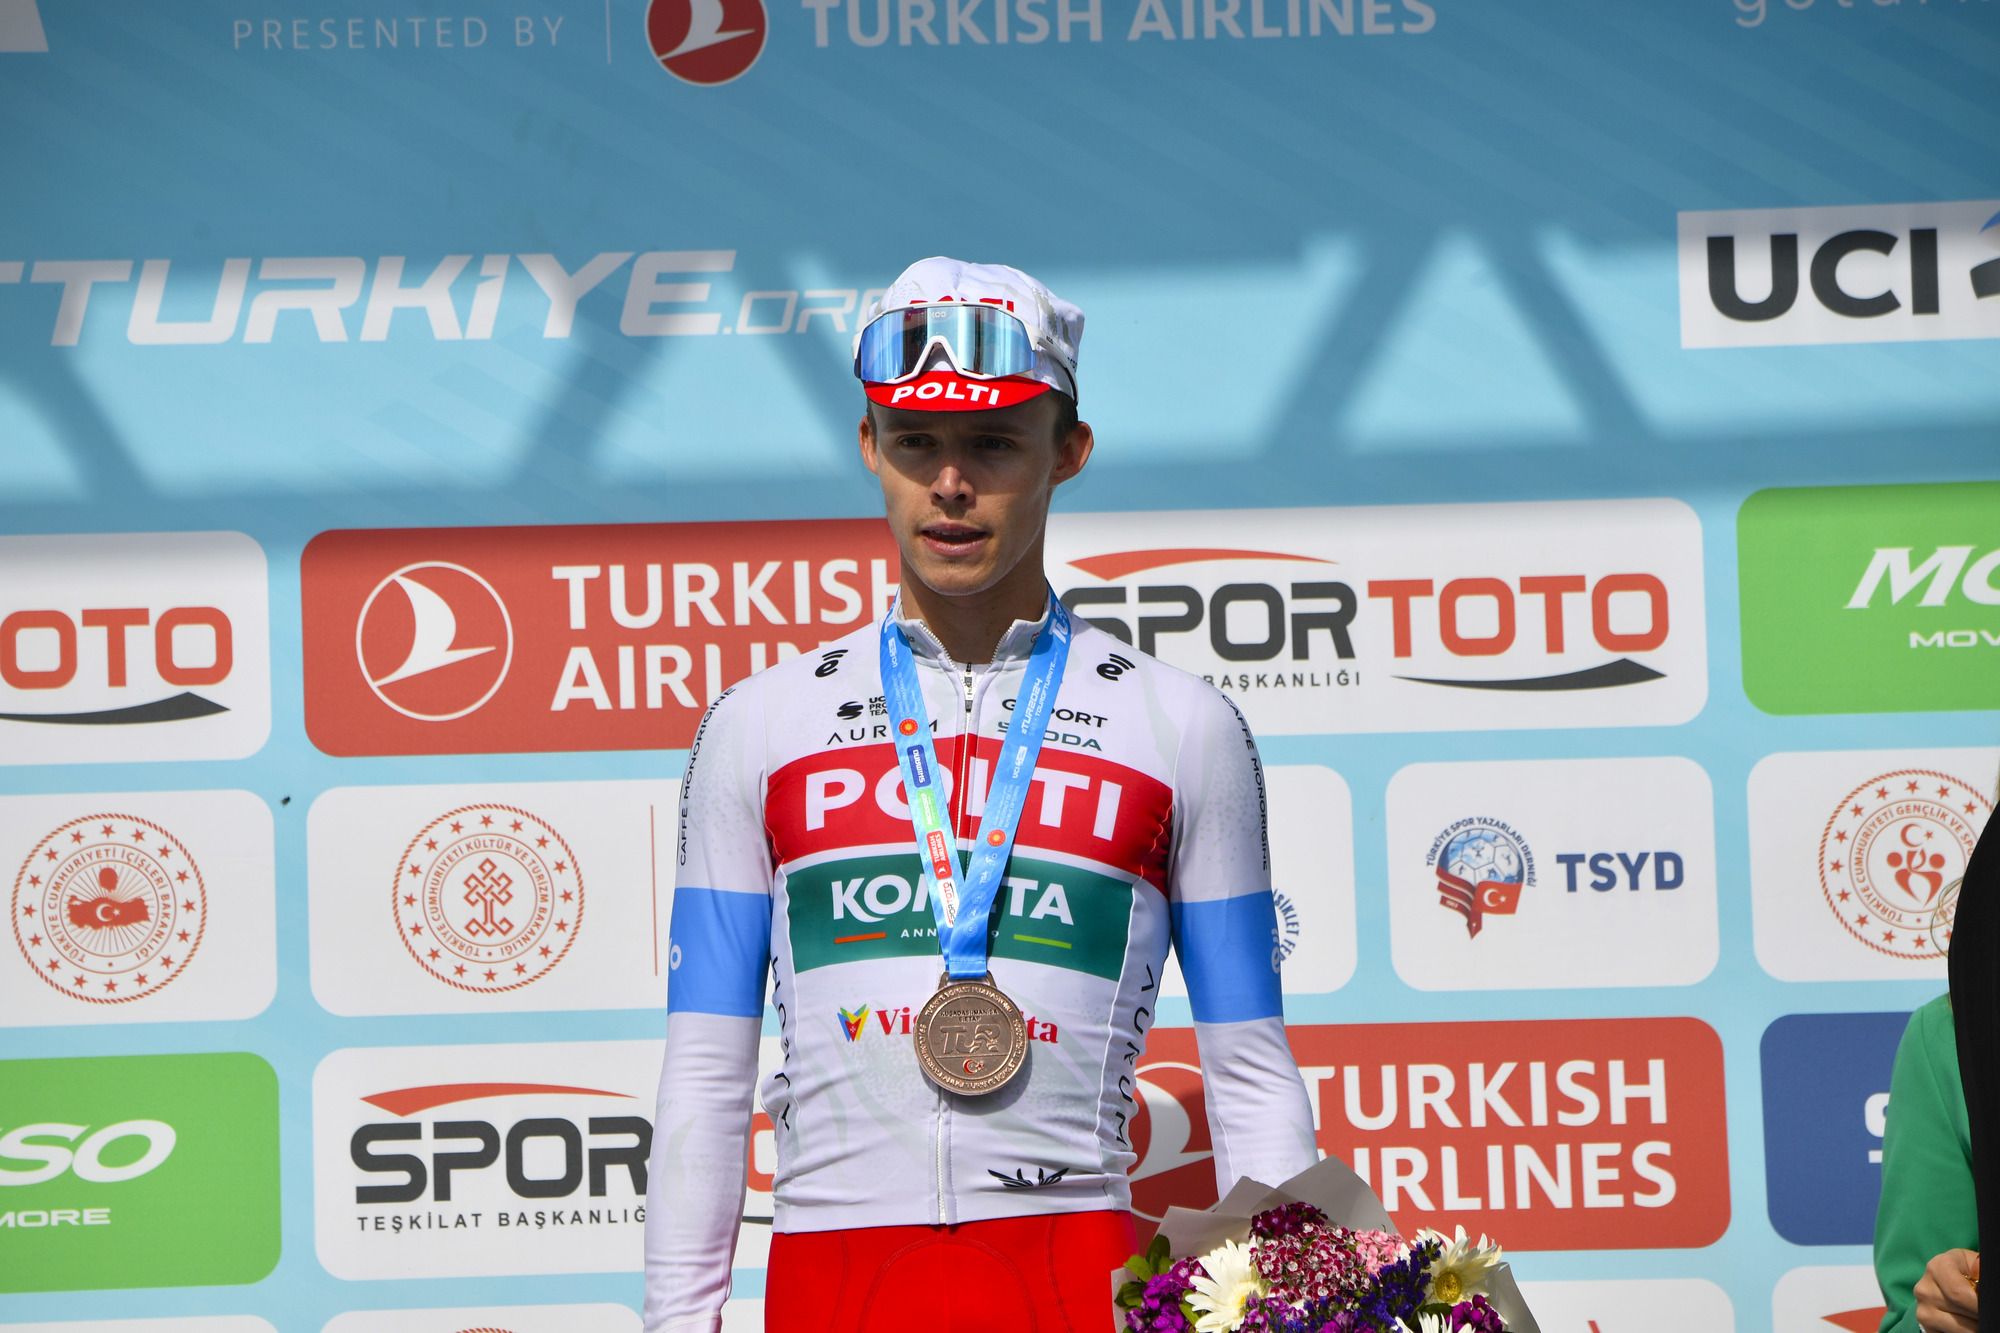 Polti Kometa takımı Türkiye podyumunda, kraliçe etabında üçüncü oldu